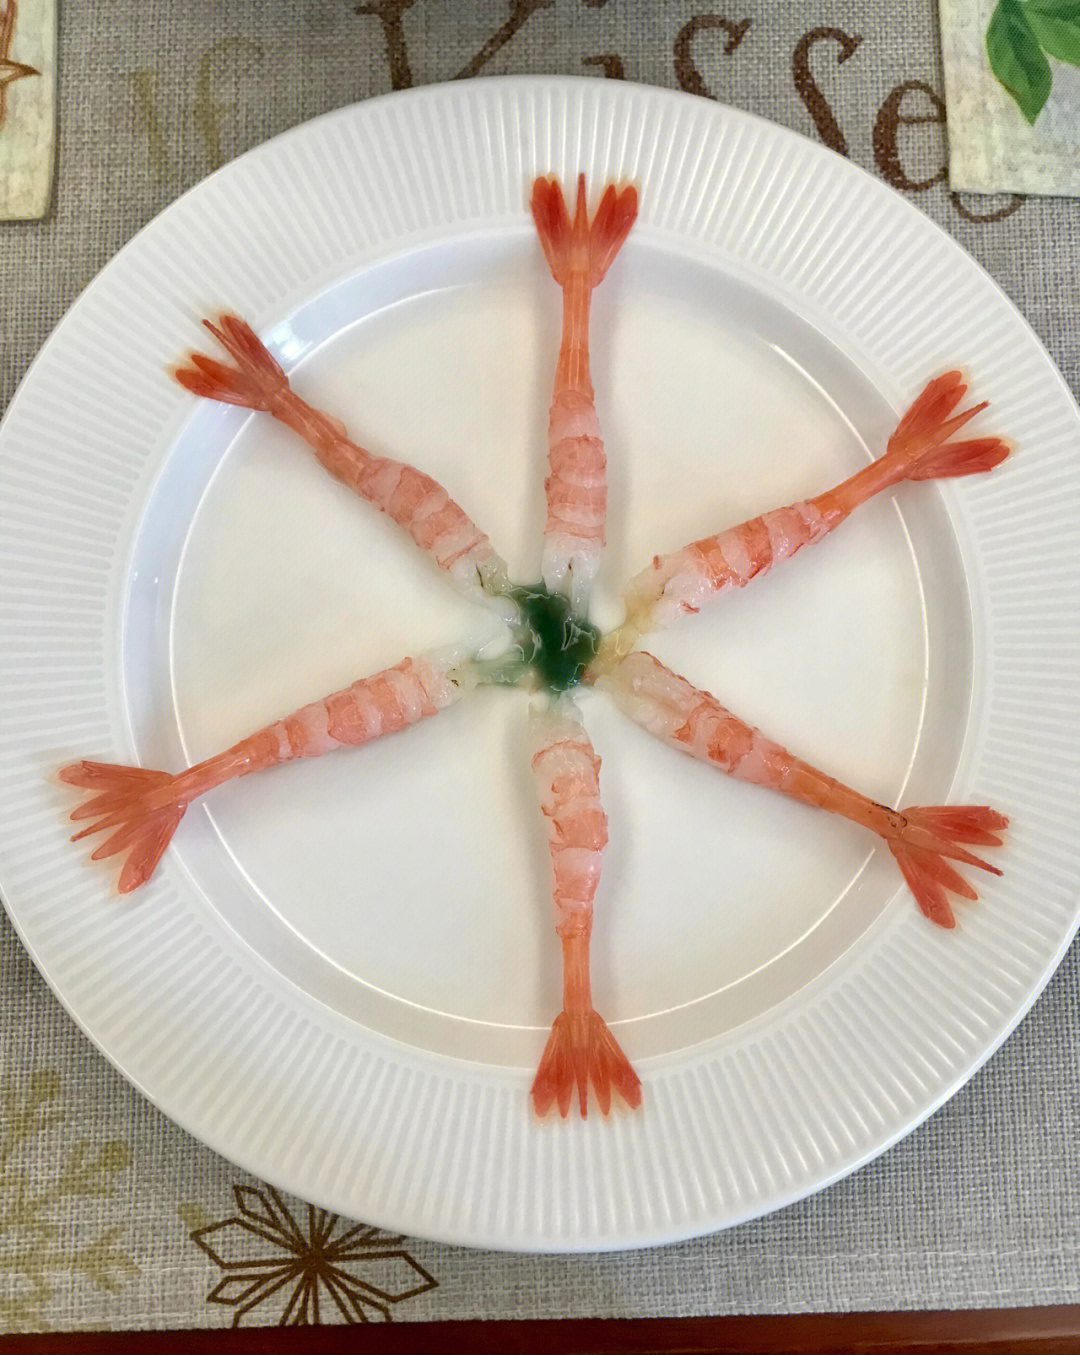 北极甜虾做法图片